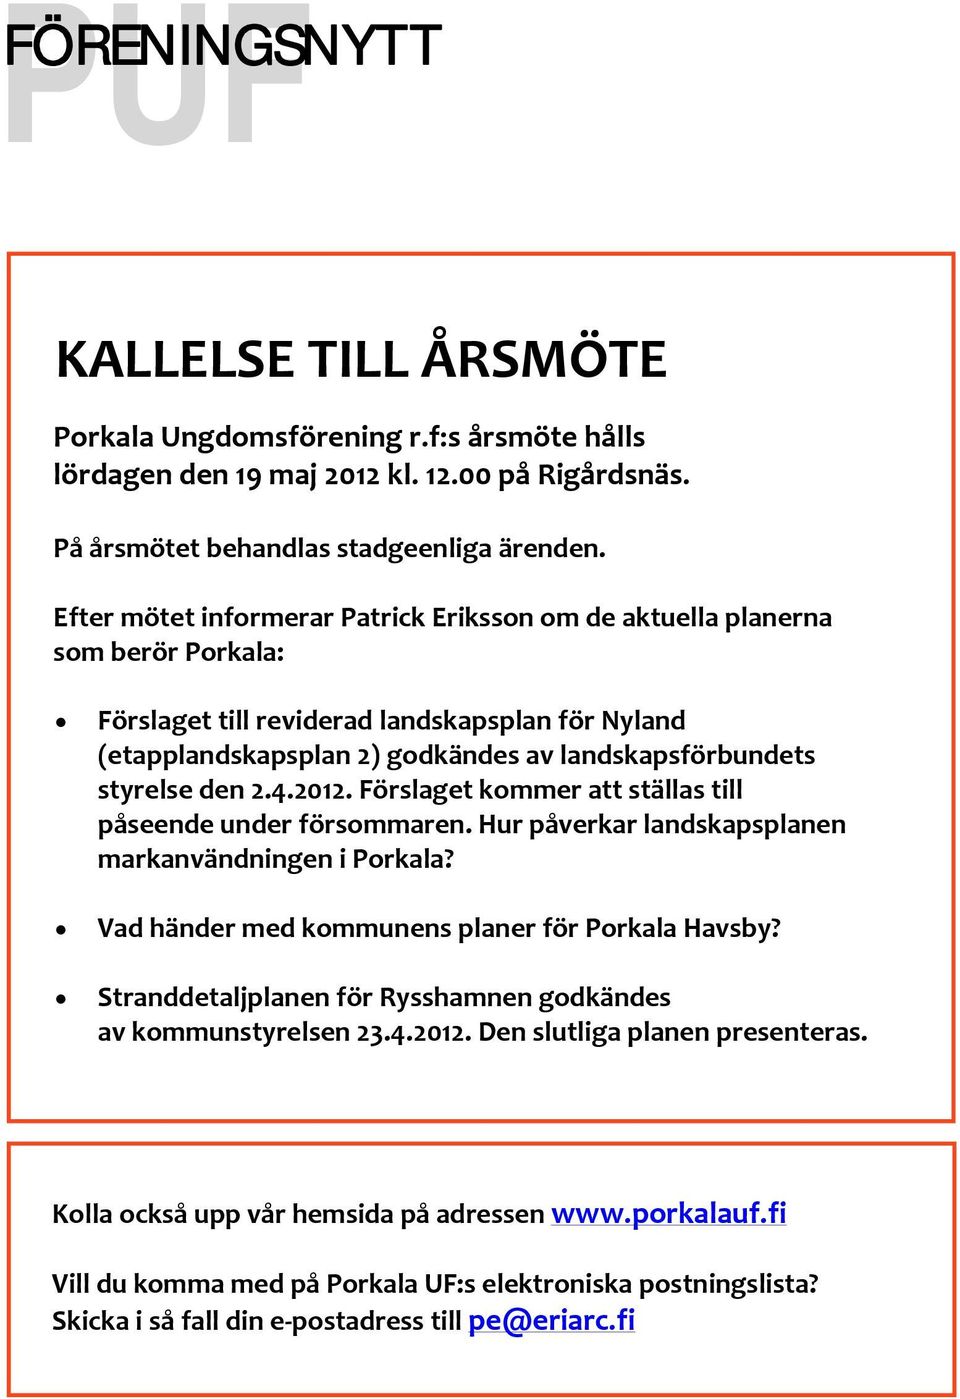 den 2.4.2012. Förslaget kommer att ställas till påseende under försommaren. Hur påverkar landskapsplanen markanvändningen i Porkala? Vad händer med kommunens planer för Porkala Havsby?